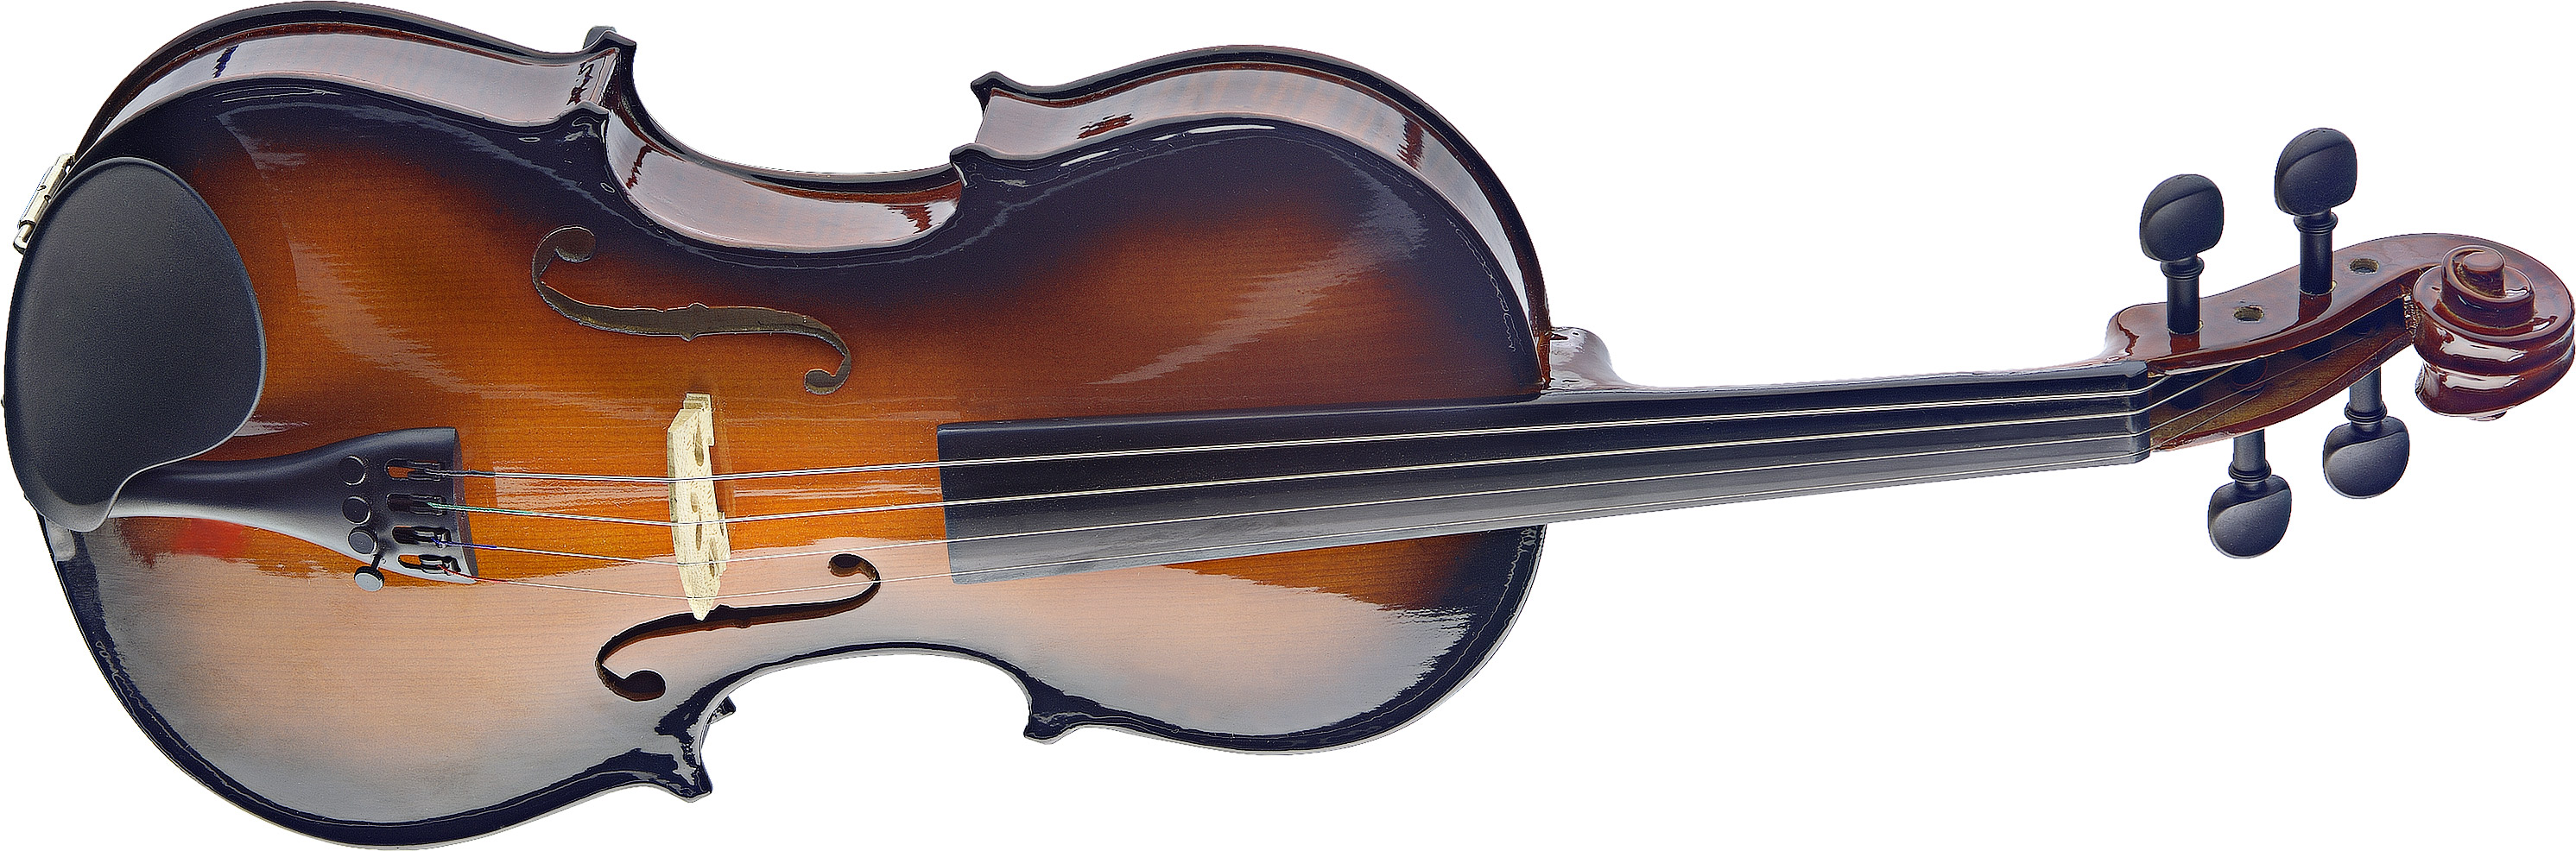 Выбор скрипки 4 4. Stagg vn-4/4-tr. Stagg SV-vn. Скрипка Stagg vn-4/4.